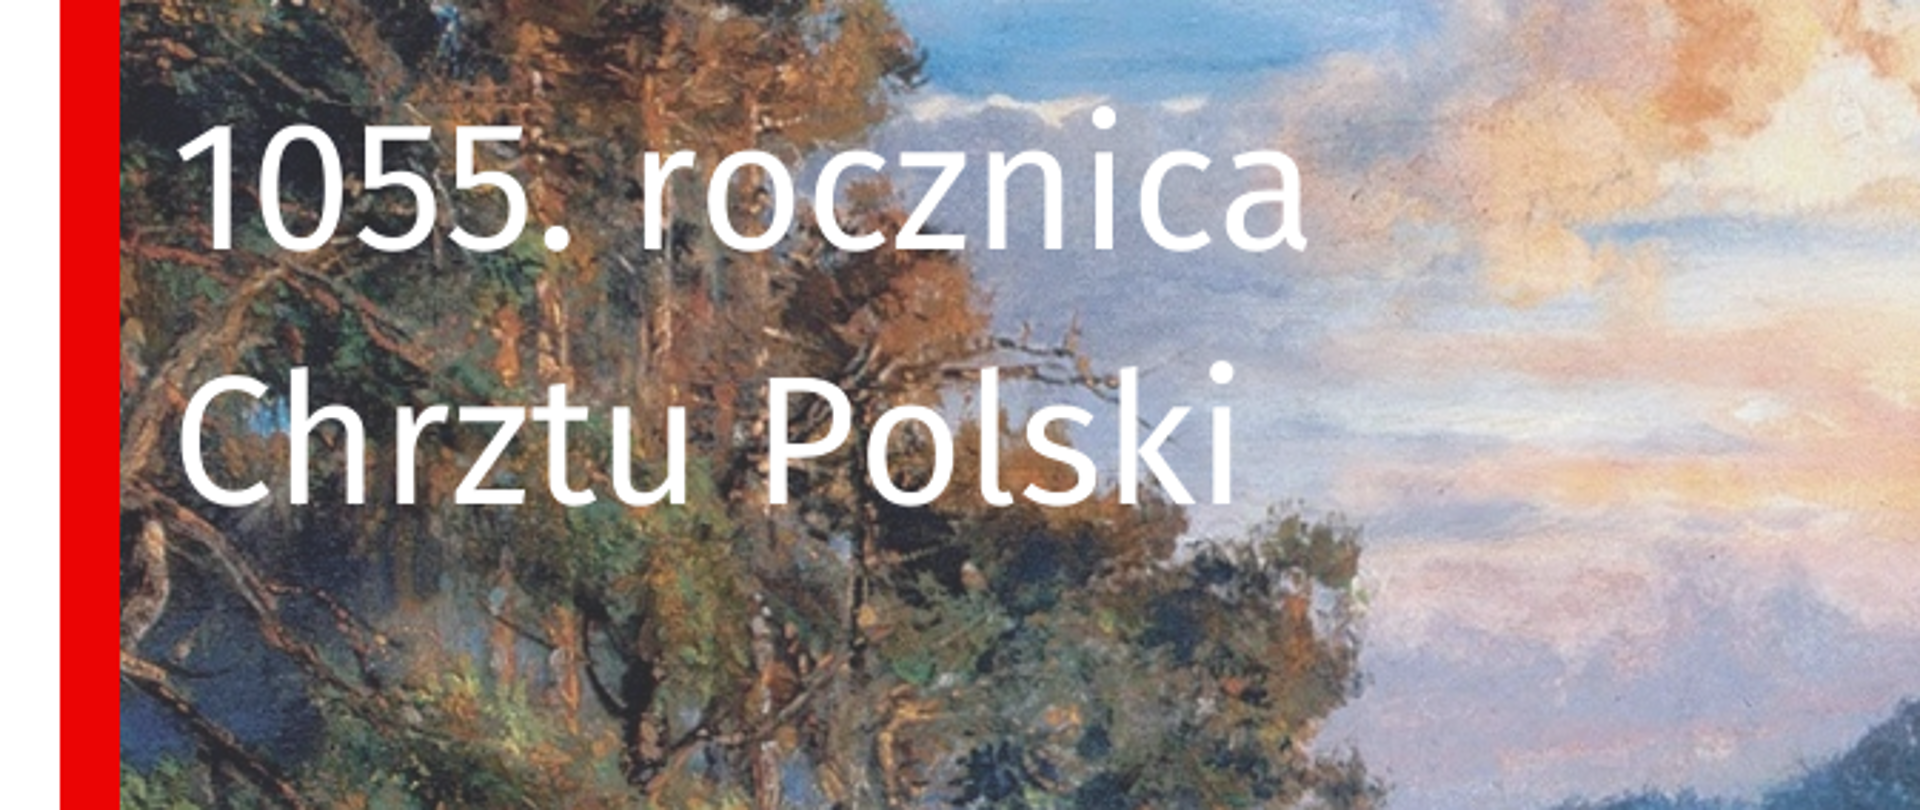 Obraz Jana Matejki "Zaprowadzenie Chrześcijaństwa" z napisem 1055. rocznica Chrztu Polski i biało-czerwoną flagą wzdłuż lewego boku 